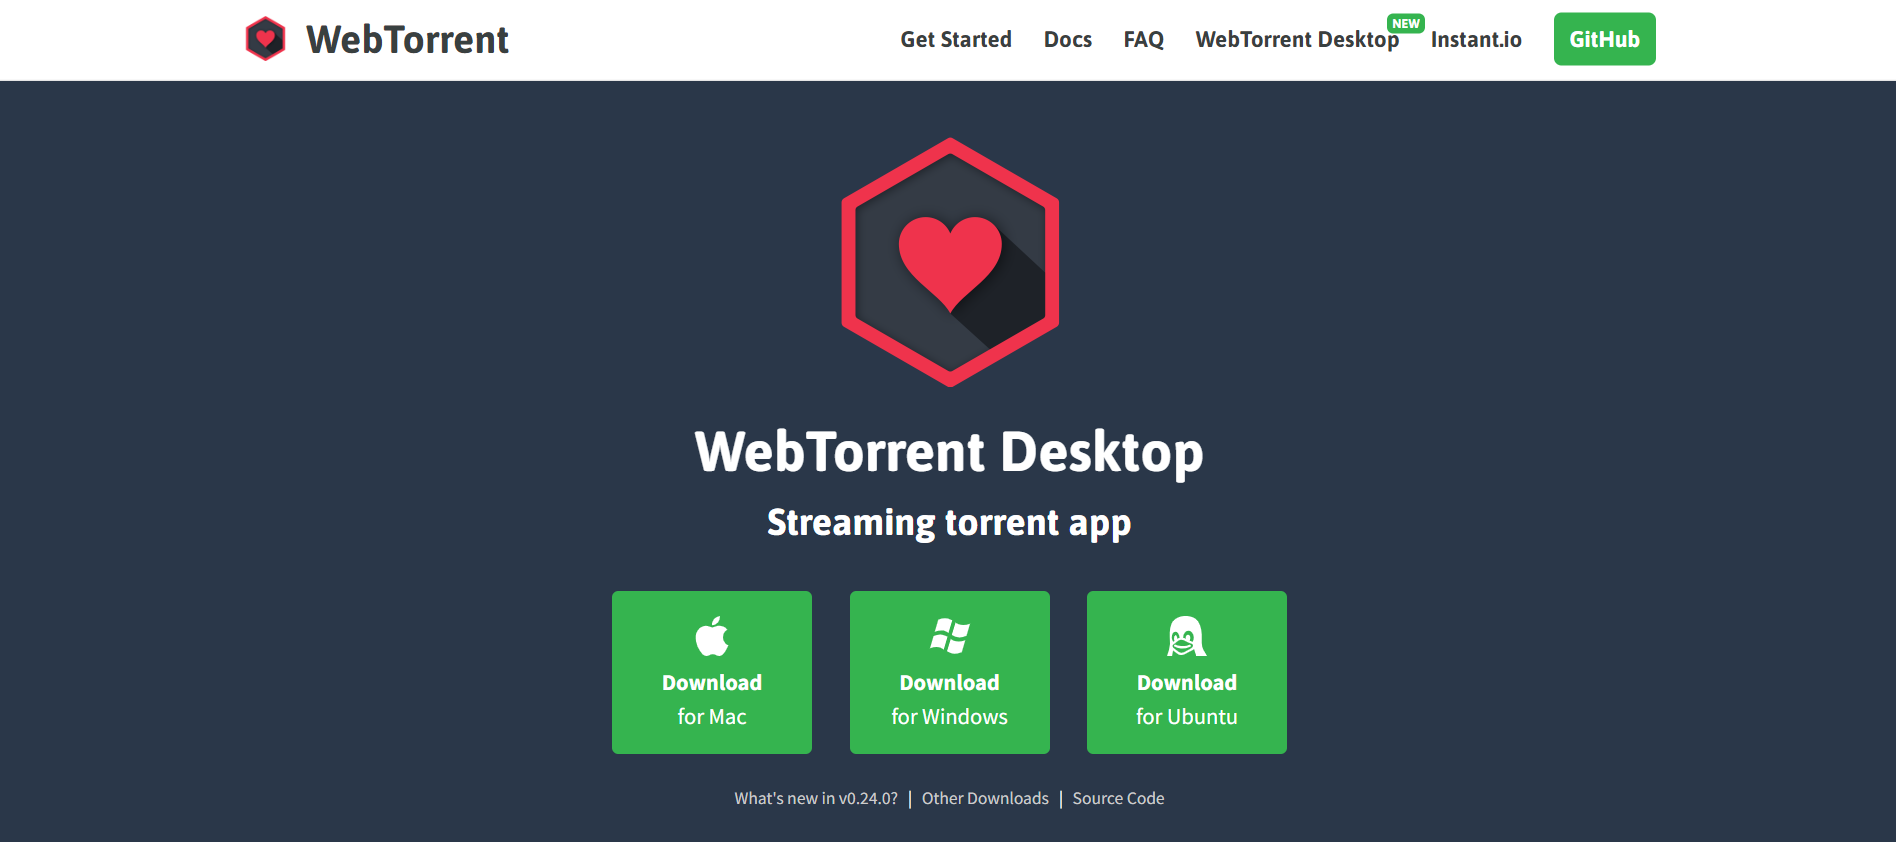 WebTorrent Desktop